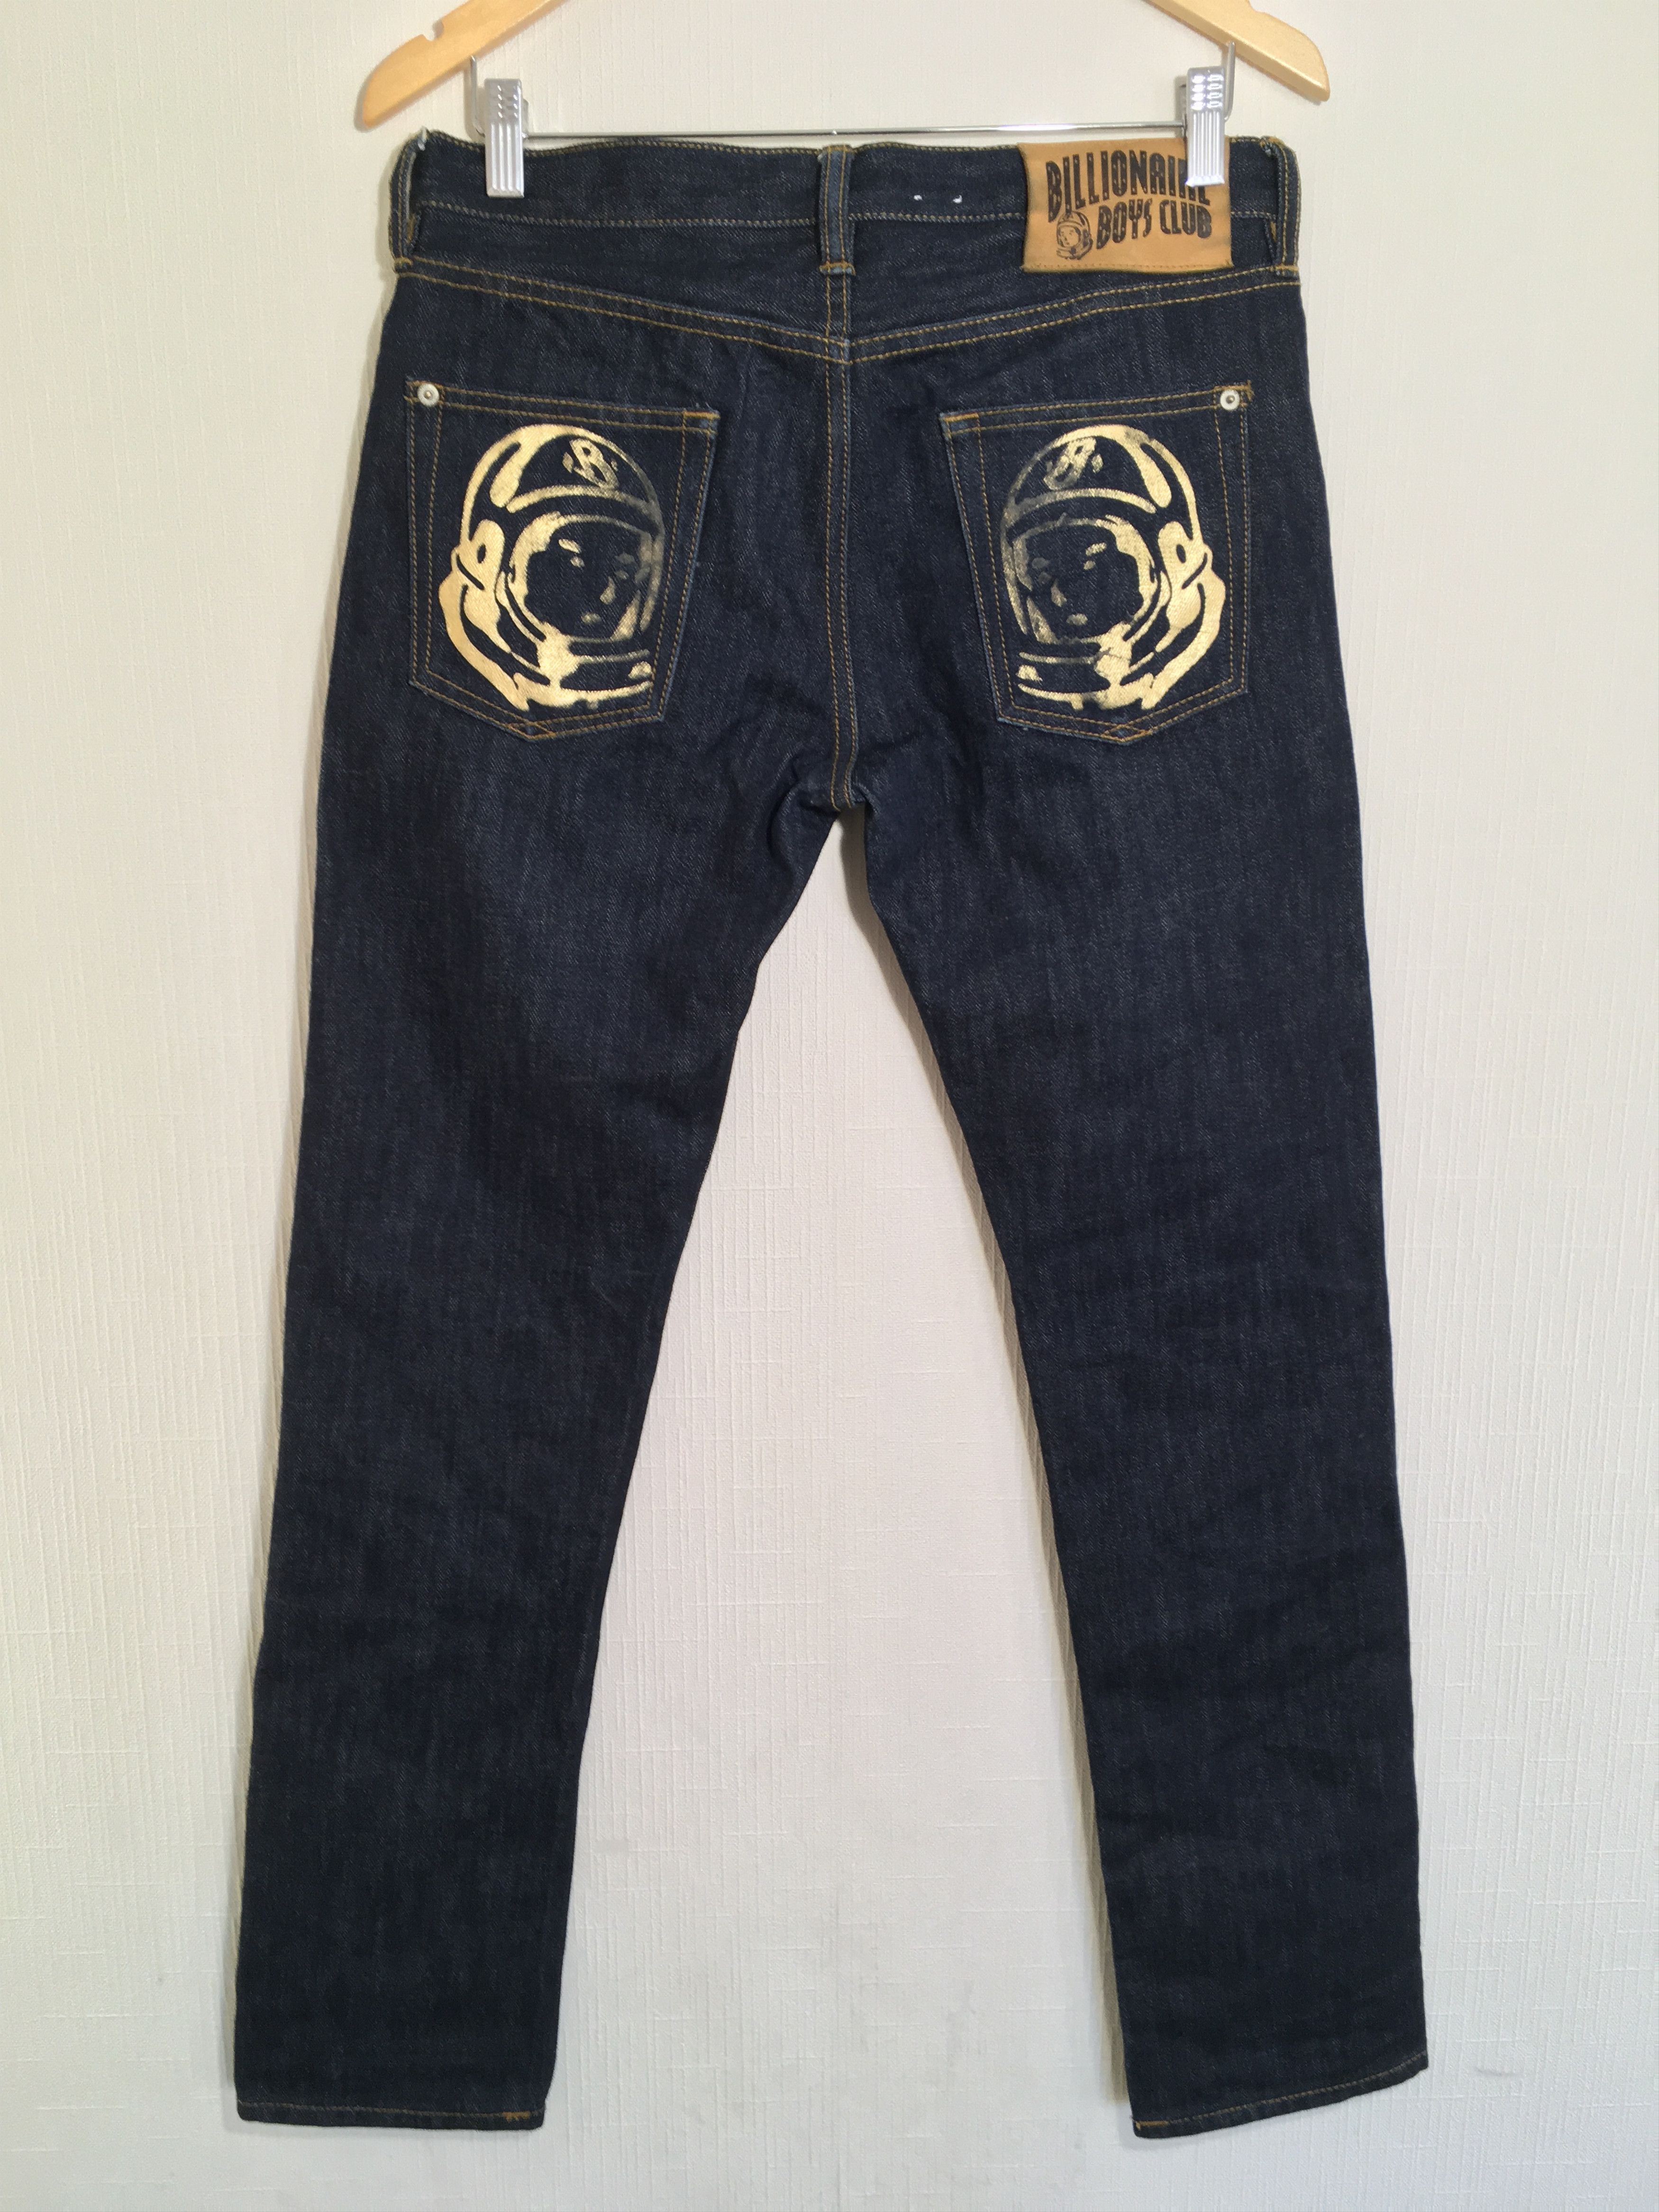 Billionaire Boys Club astronaut jeans | Grailed